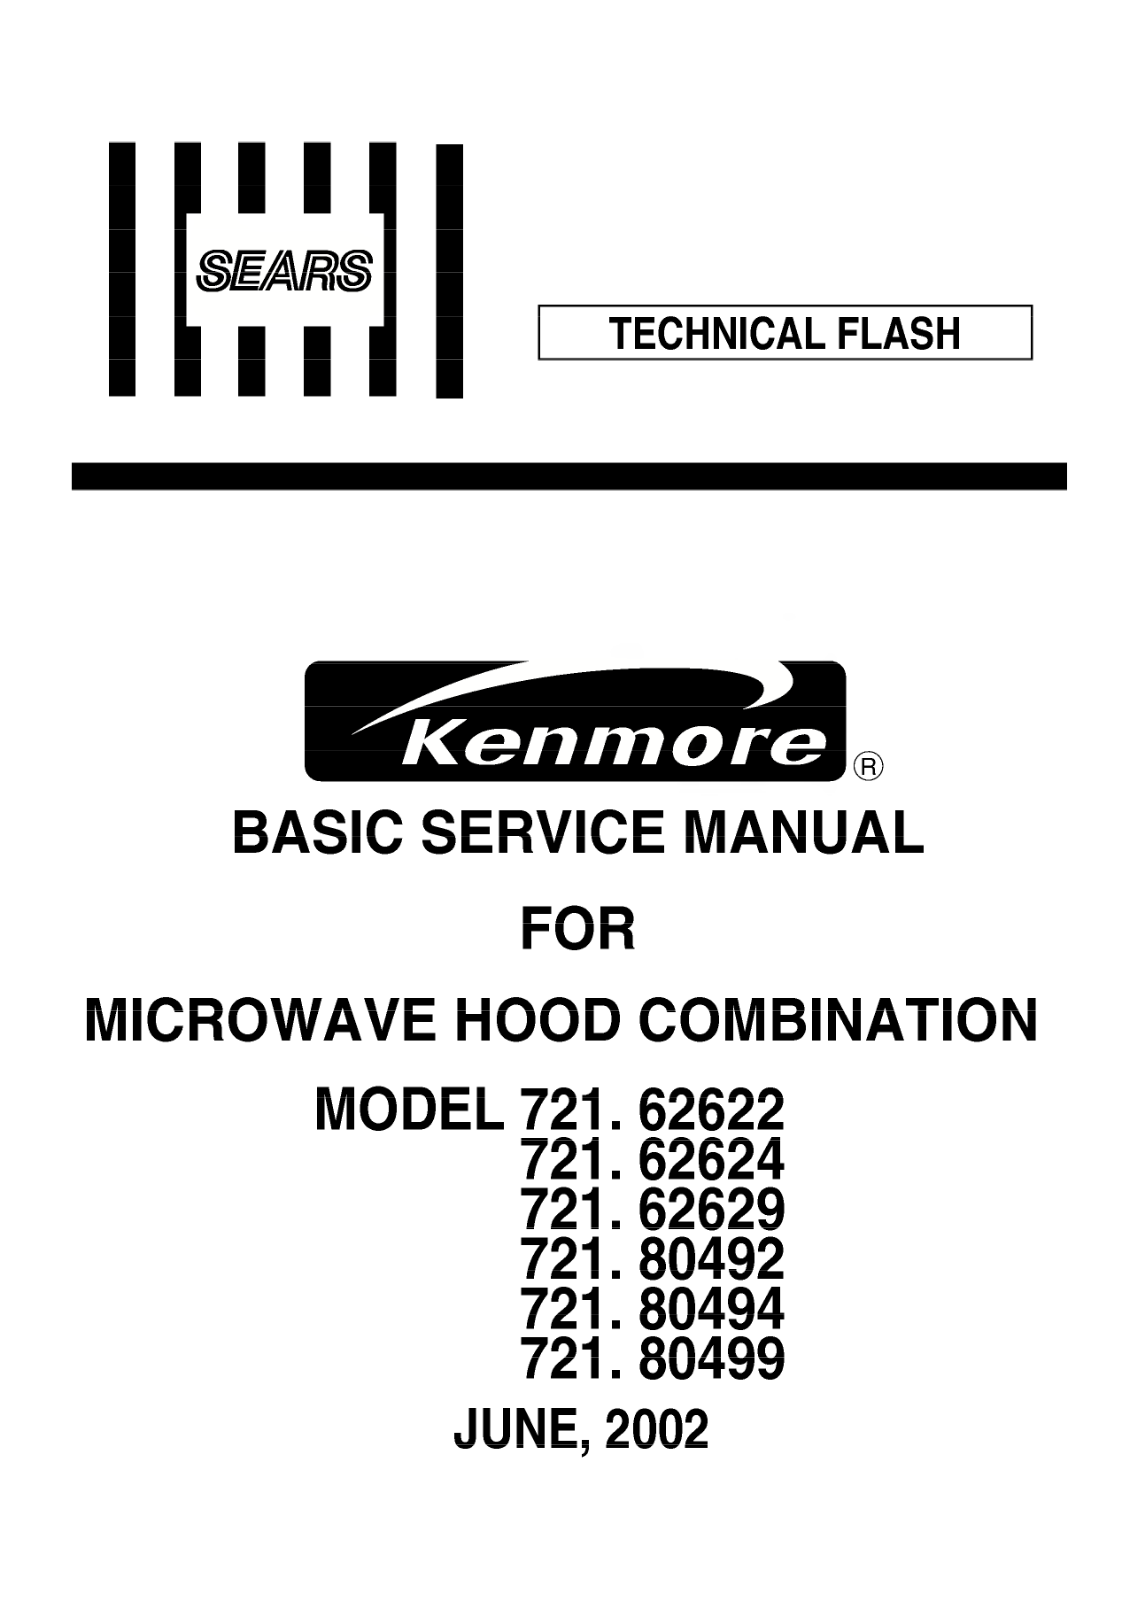 Kenmore 721.62622, 721.62629, 721.62624 Service Manual